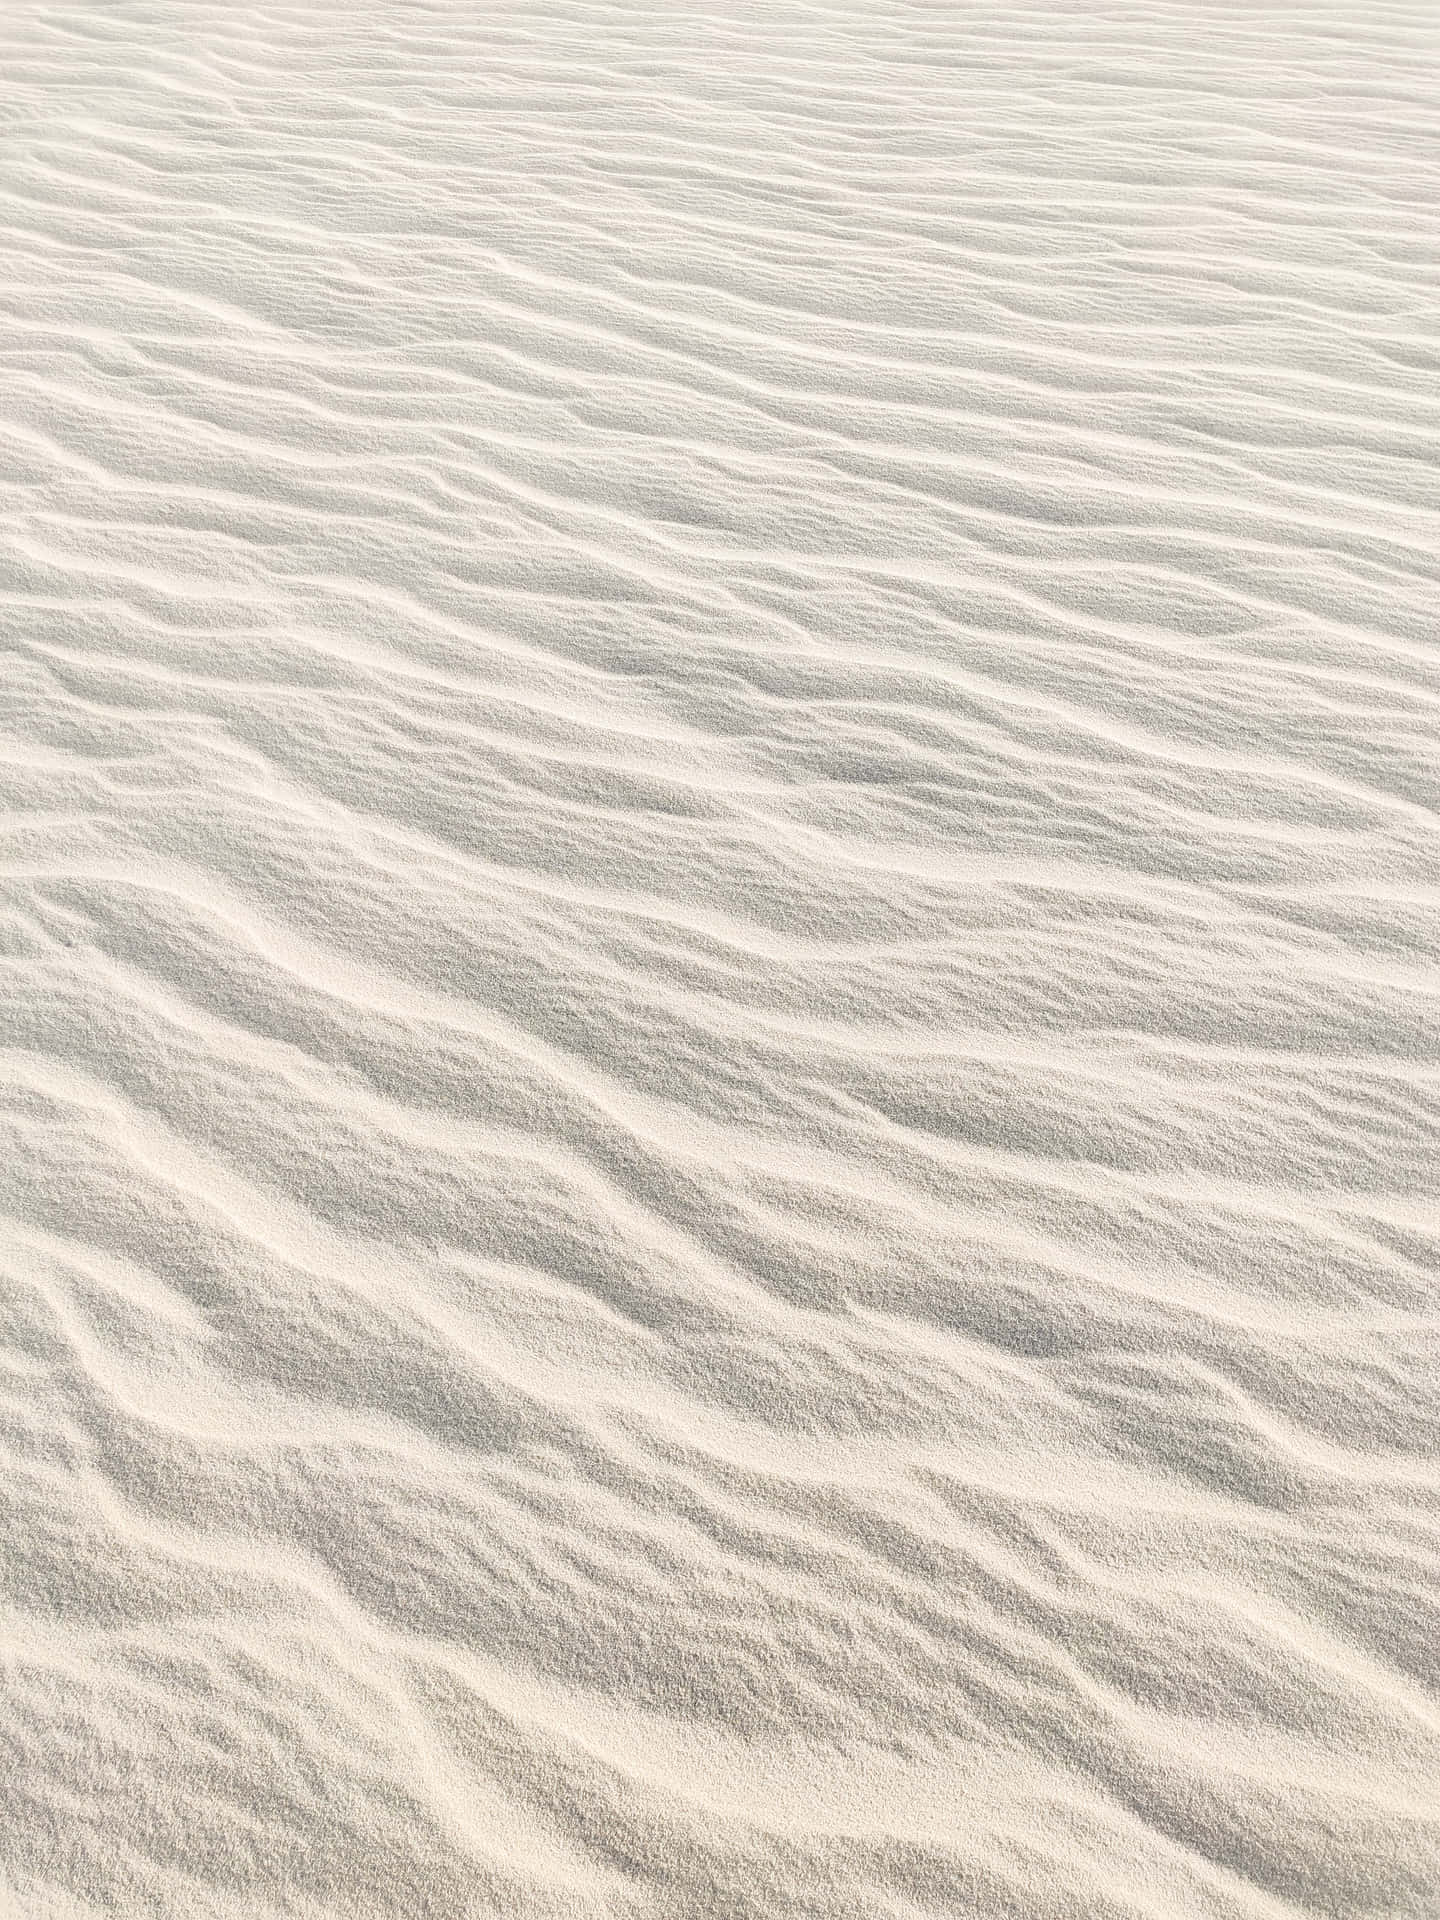 White Sand Dunes Desert Wallpaper